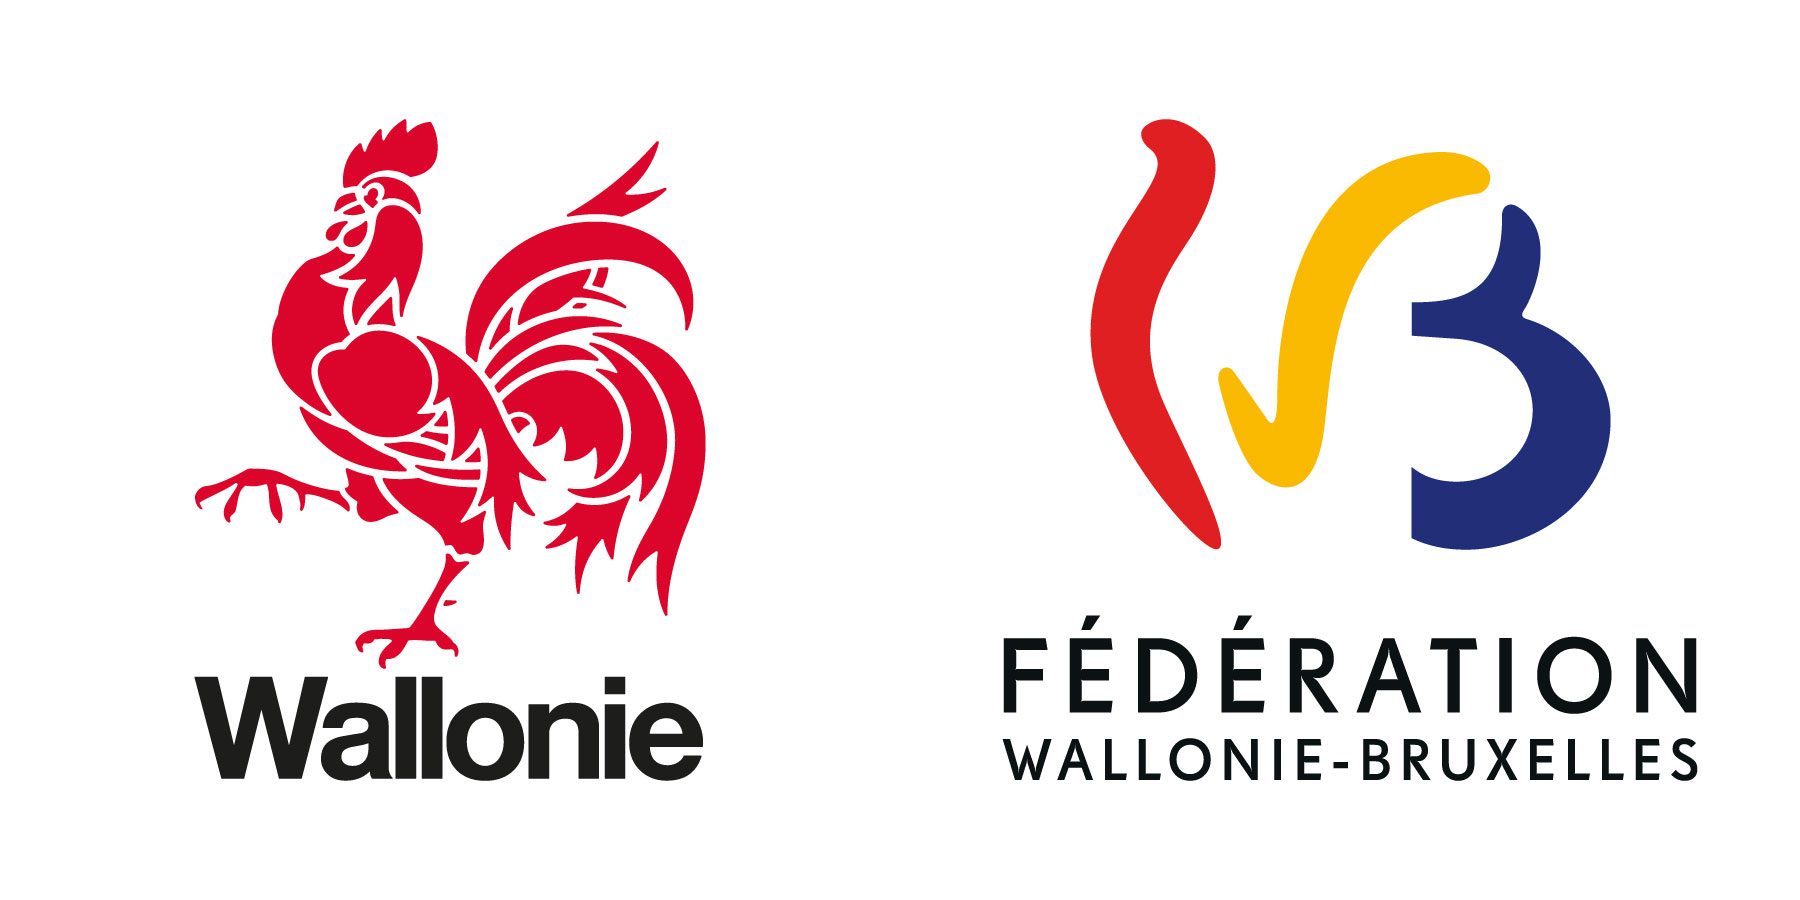 2 logos